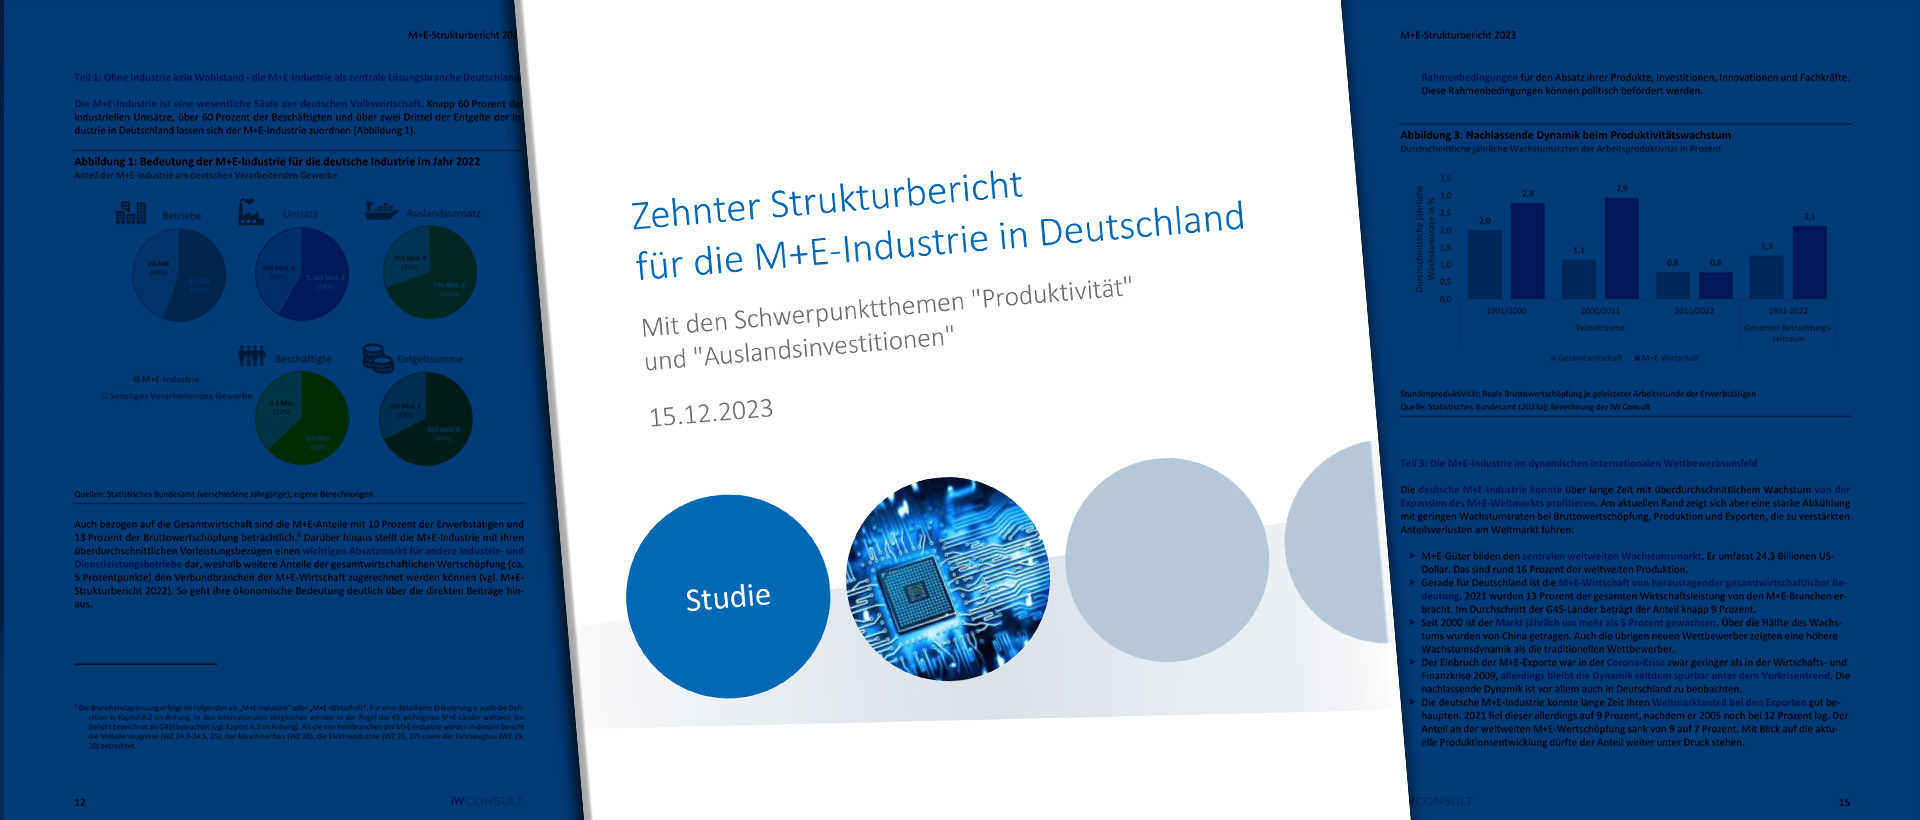 Neunter Strukturbericht für die M+E-Industrie in Deutschland